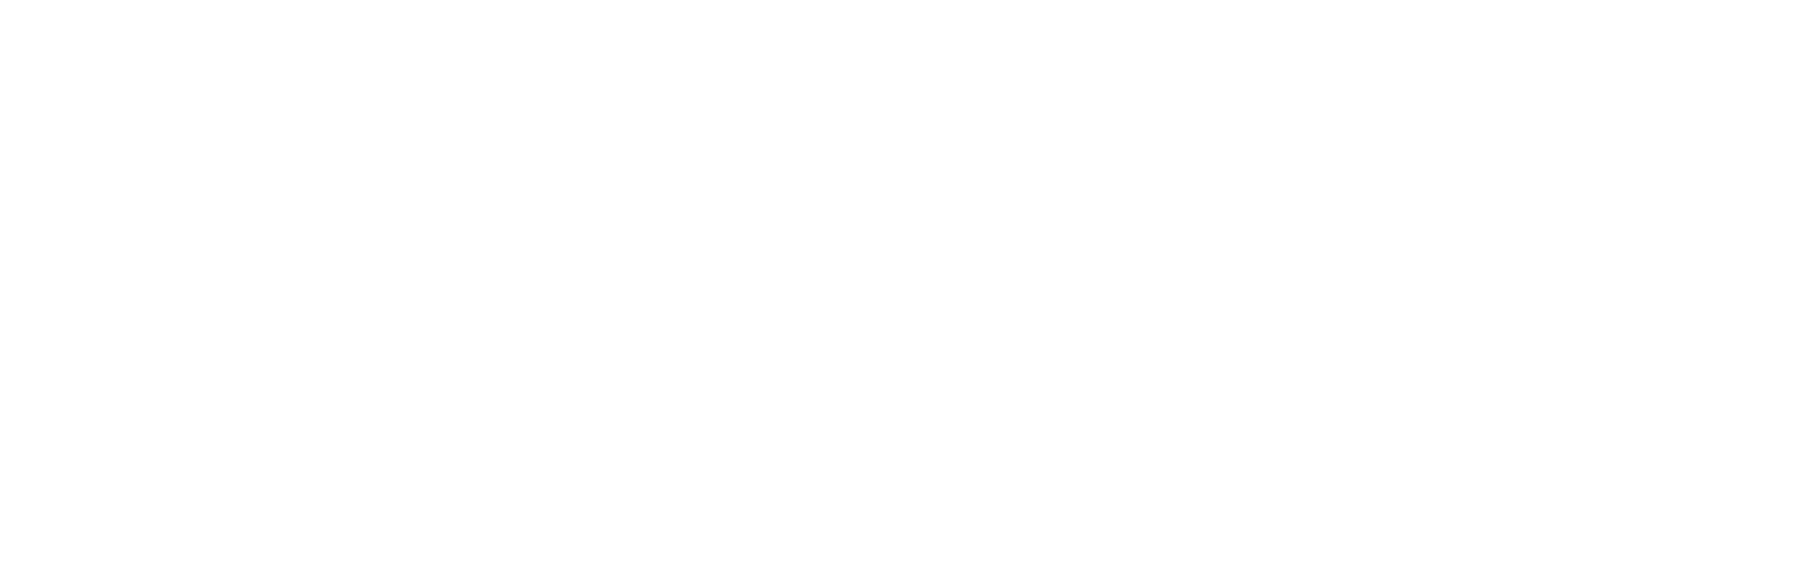 Graphic of PRI Programs Registrar Certified ISO9001